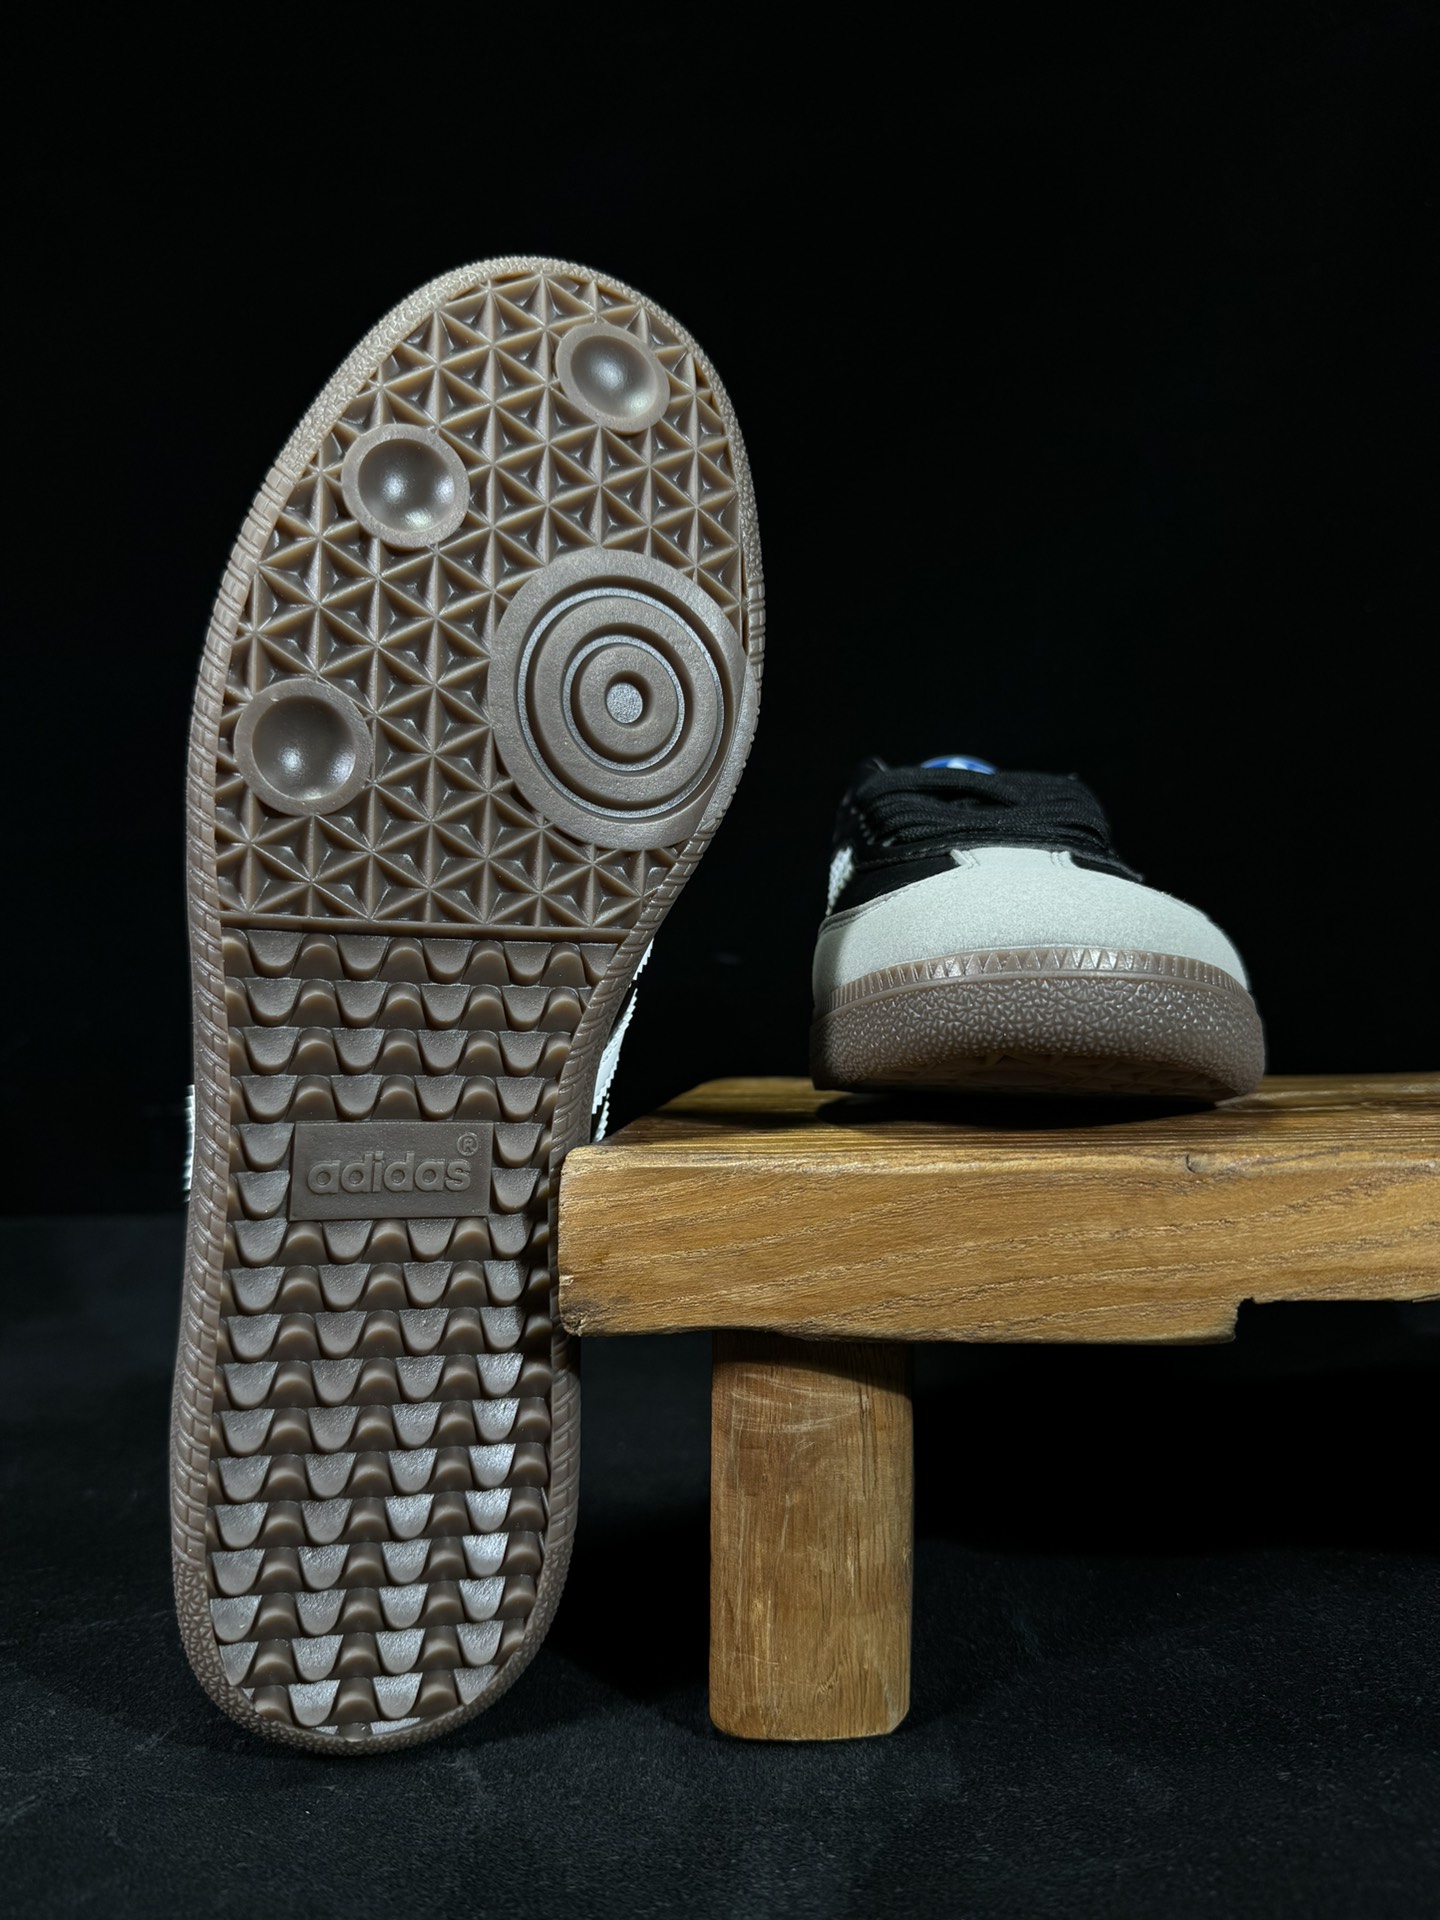 阿迪桑巴德训鞋联名黑灰色Adidas/阿迪达斯SAMBAVEGAN黑白男女低帮经典运动鞋板鞋FX9042